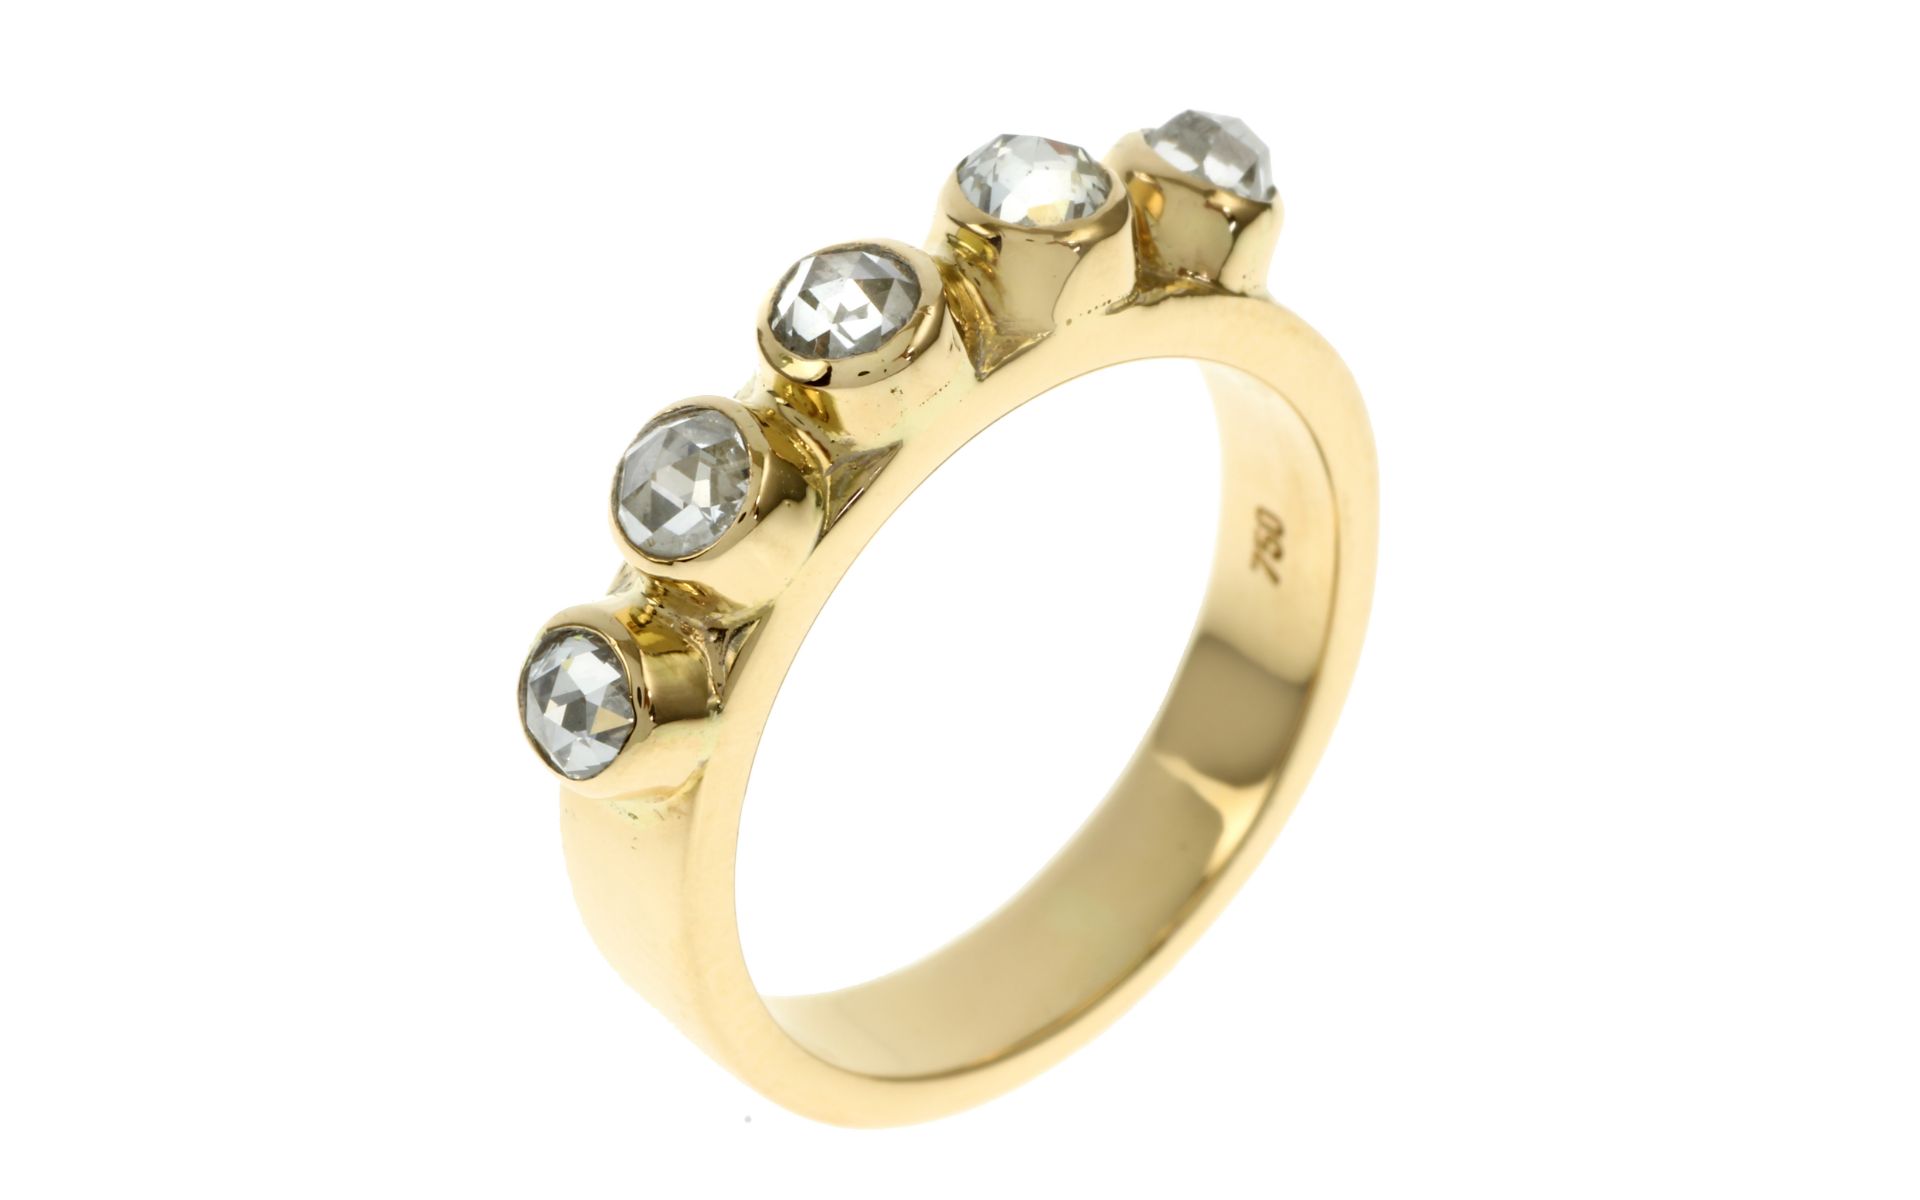 Ring 8.19g 750/- Gelbgold mit 5 Diamanten zus. ca. 0.50 ct. im Rosenschliff. Ringgroesse ca. 54